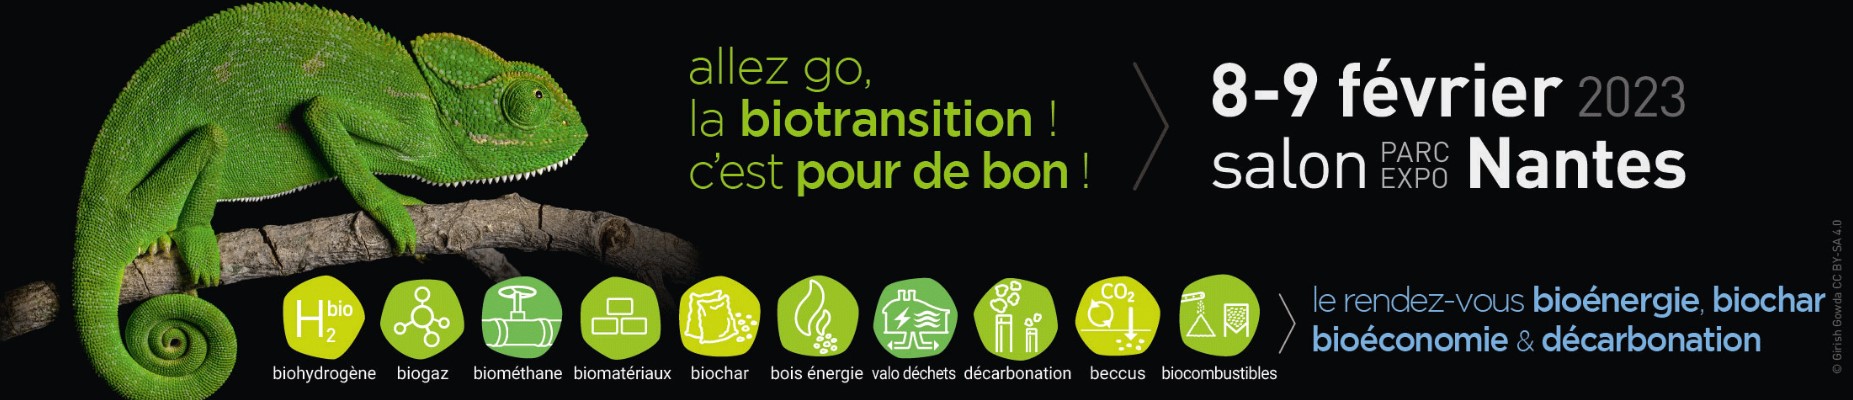 Bio360 Expo 2023 à Nantes (44) - salon professionnel dédié aux Bioénergies et à la Bioéconomie